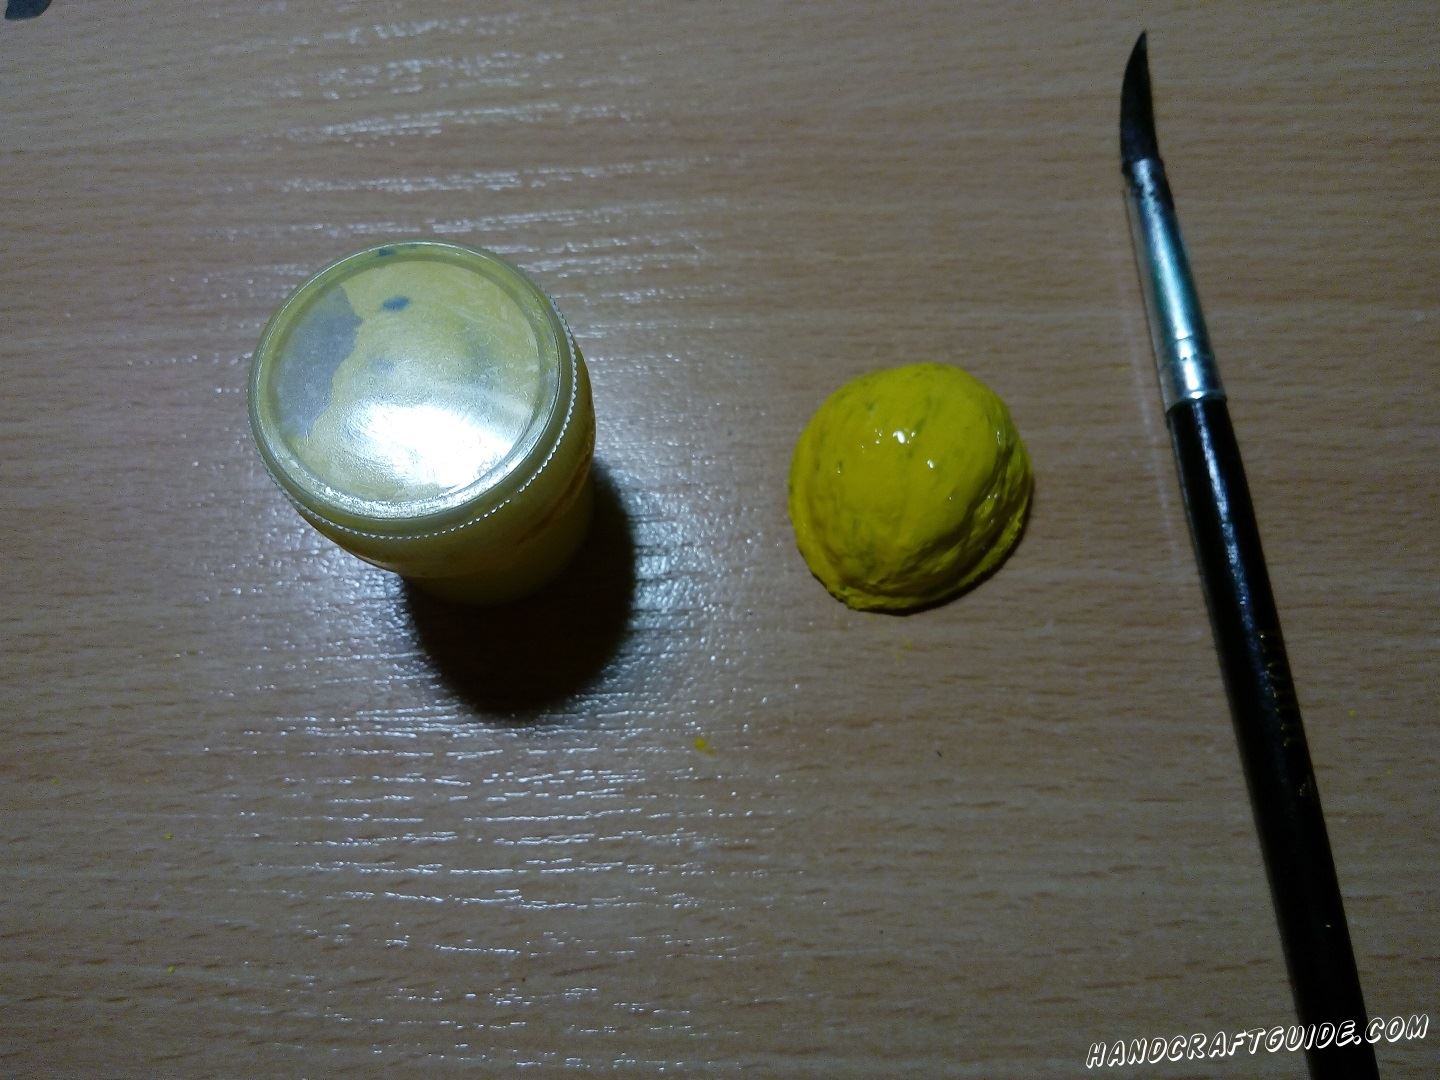 Затем берем половинку скорлупы ореха и закрашиваем в желтый цвет. Ждём пока высохнет